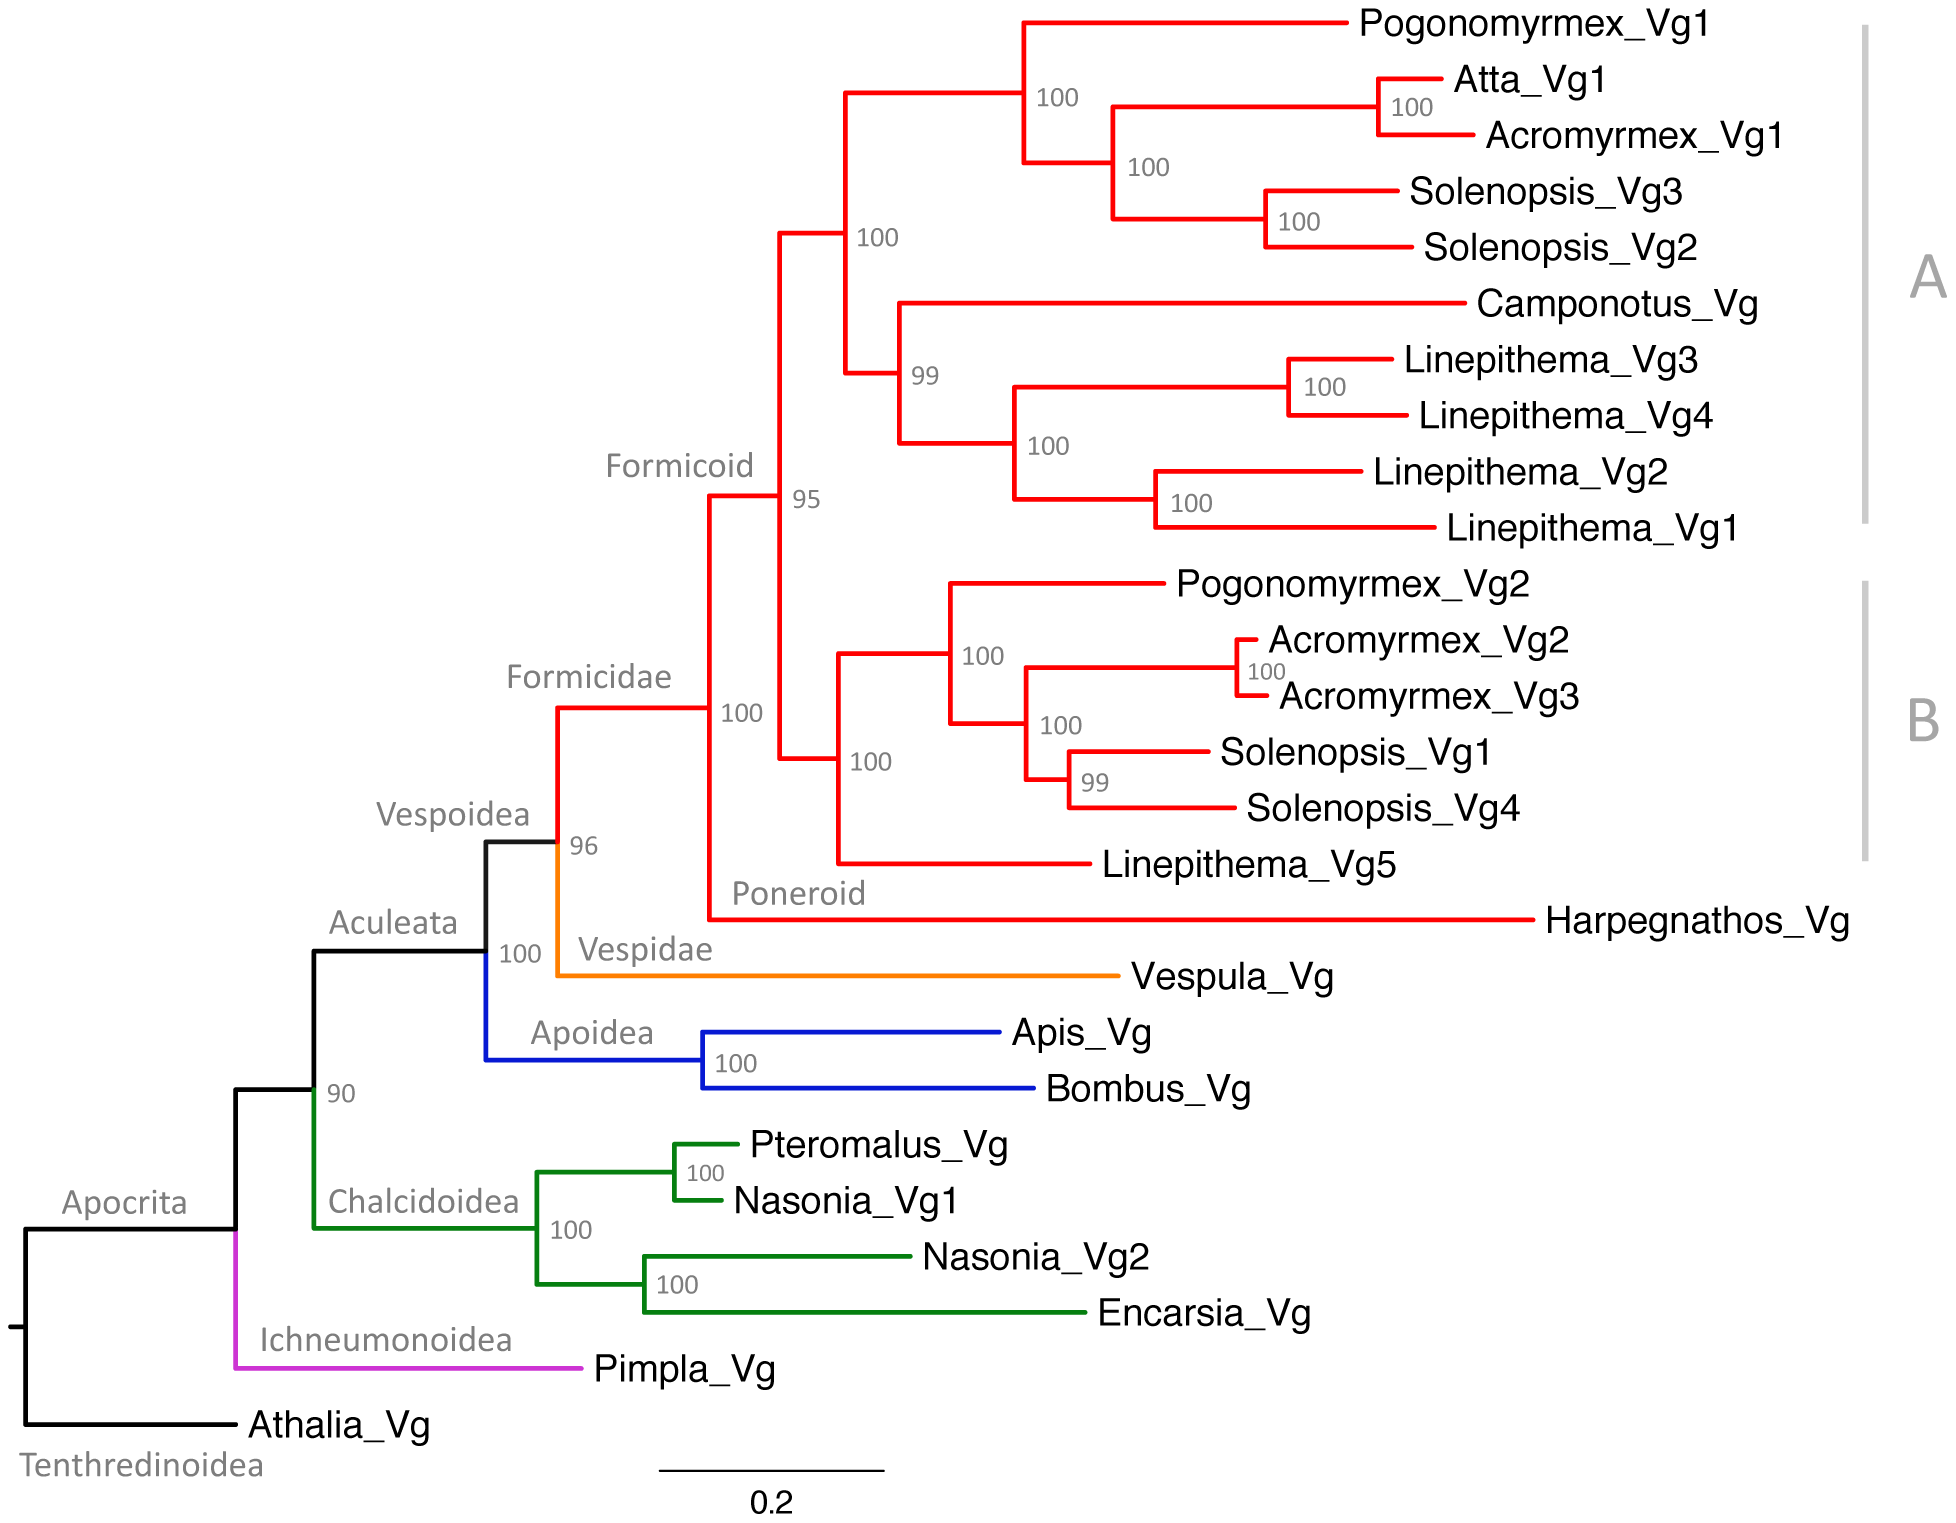 Maximum likelihood tree of ant vitellogenins